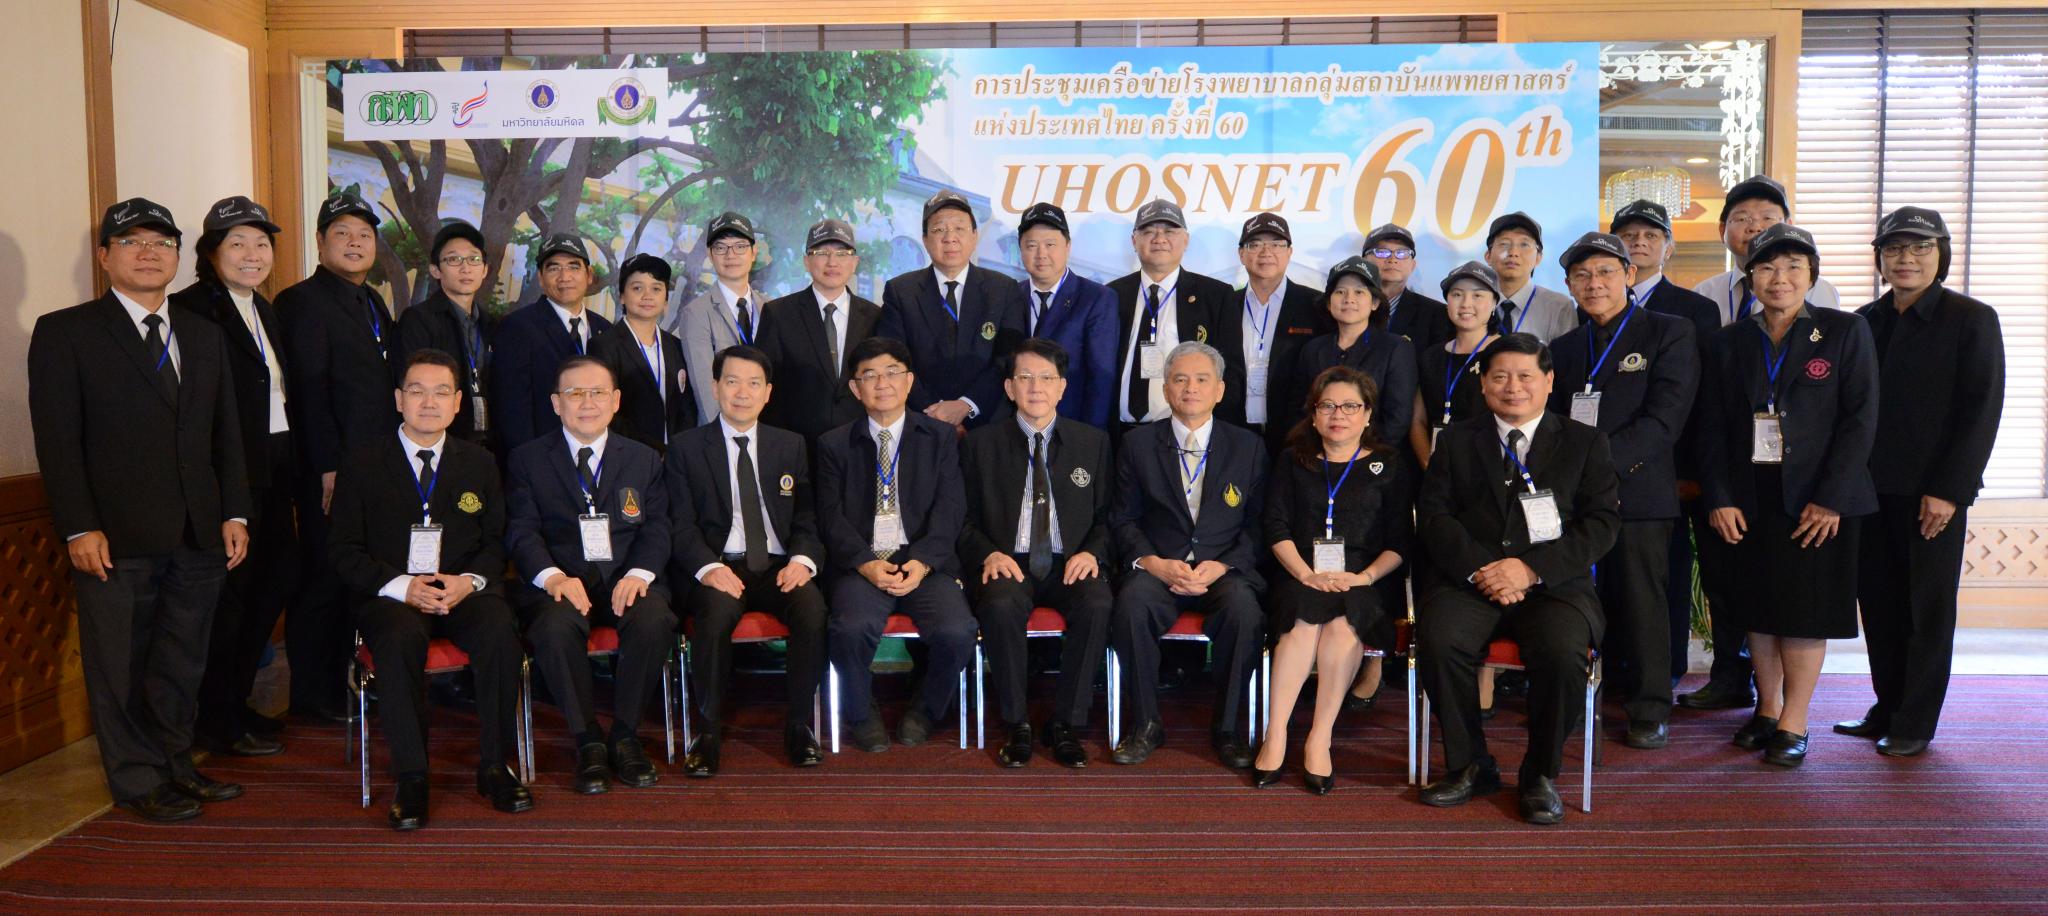 การประชุมเครือข่ายโรงพยาบาลกลุ่มสถาบันแพทยศาสตร์แห่งประเทศไทย (UHOSNET) ครั้งที่ 60